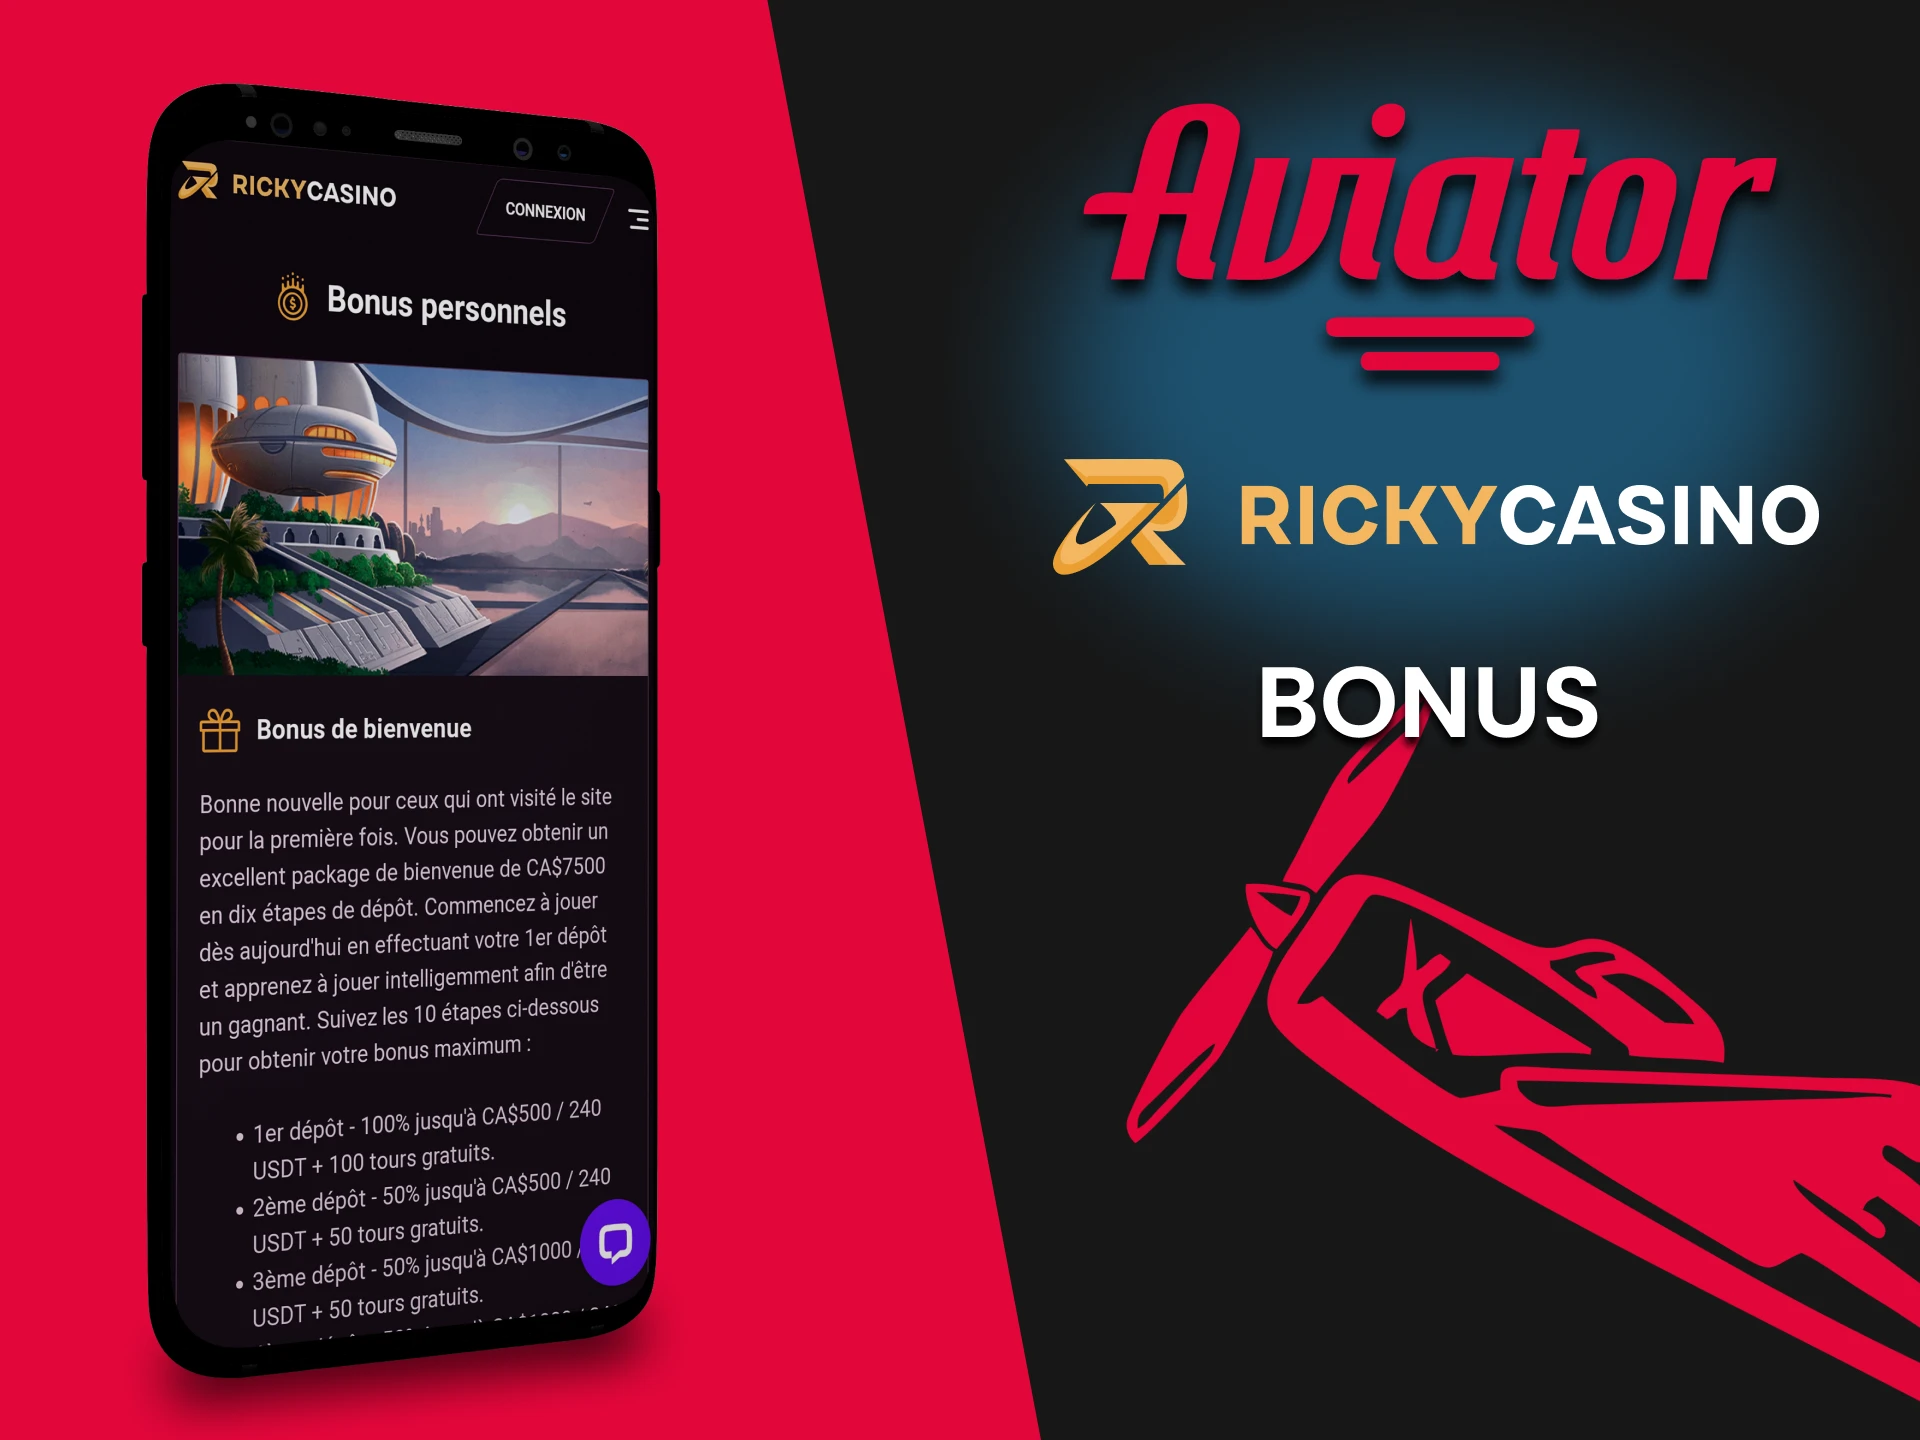 L'application Ricky Casino offre des bonus aux joueurs Aviator.